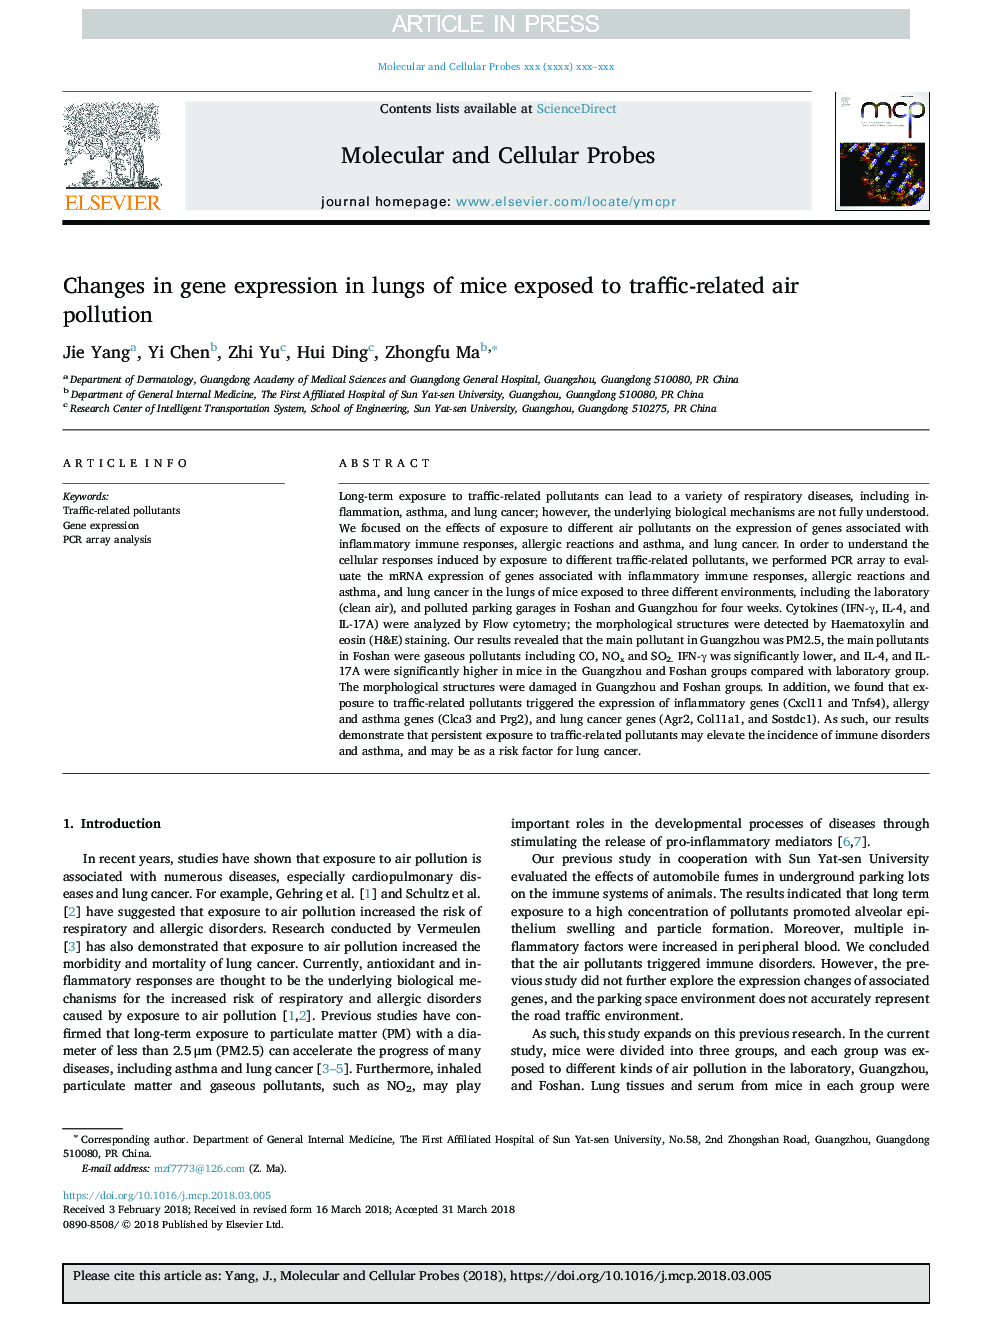 تغییرات در بیان ژن در ریه های موش در مواجهه با آلودگی هوا مرتبط با ترافیک 